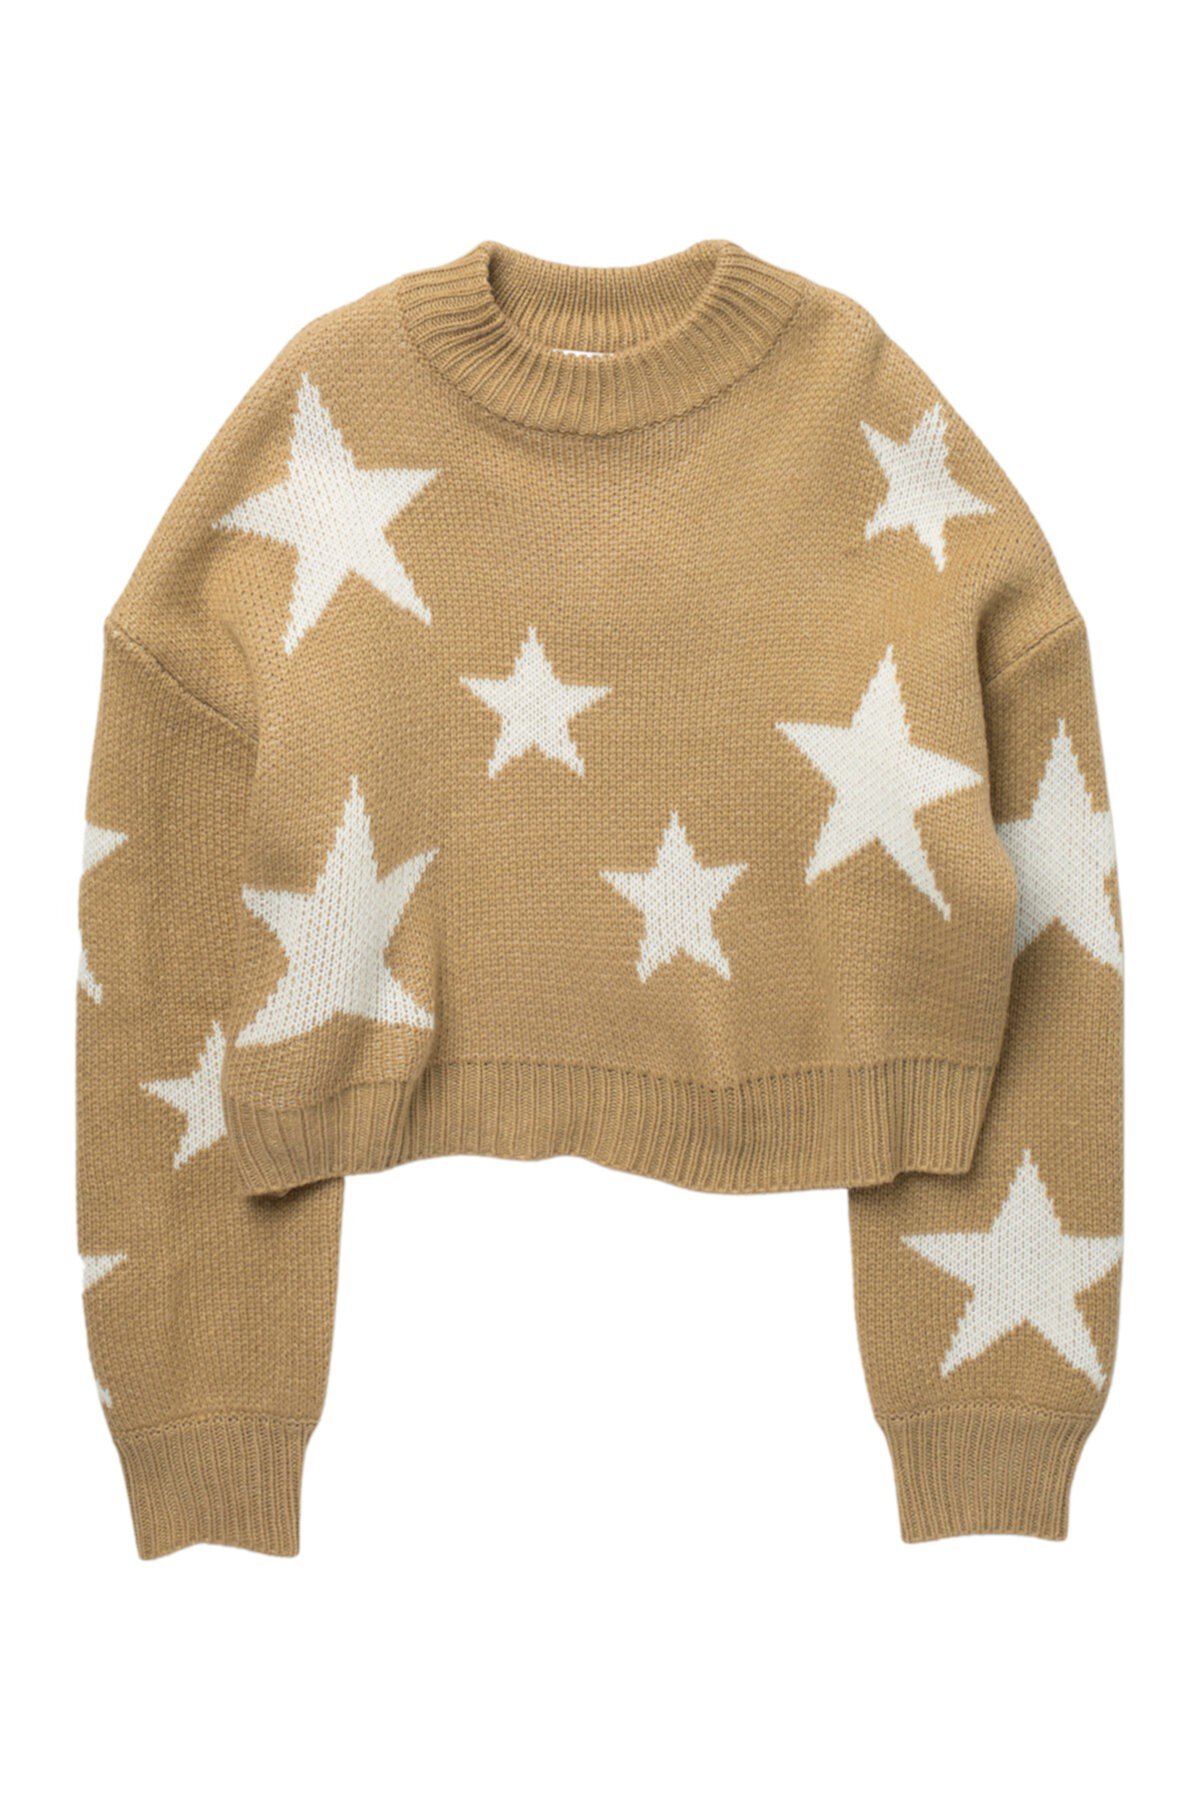 Укороченный свитер Star Pullover (для больших девочек) Cotton Emporium